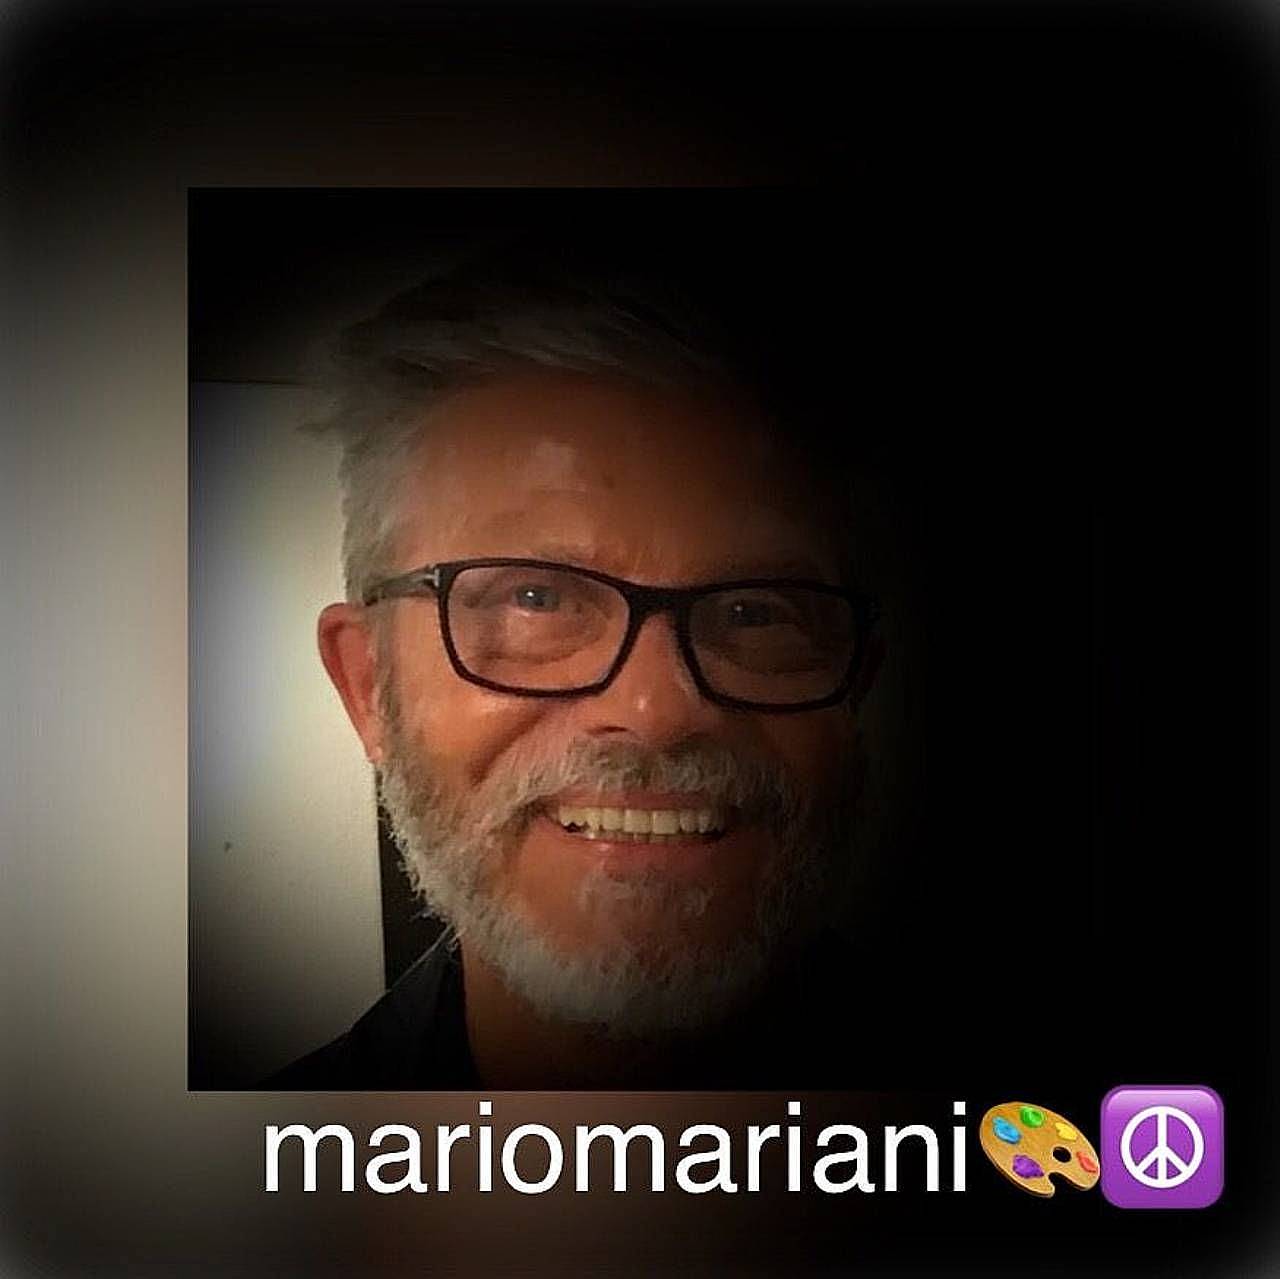 Mario Mariani